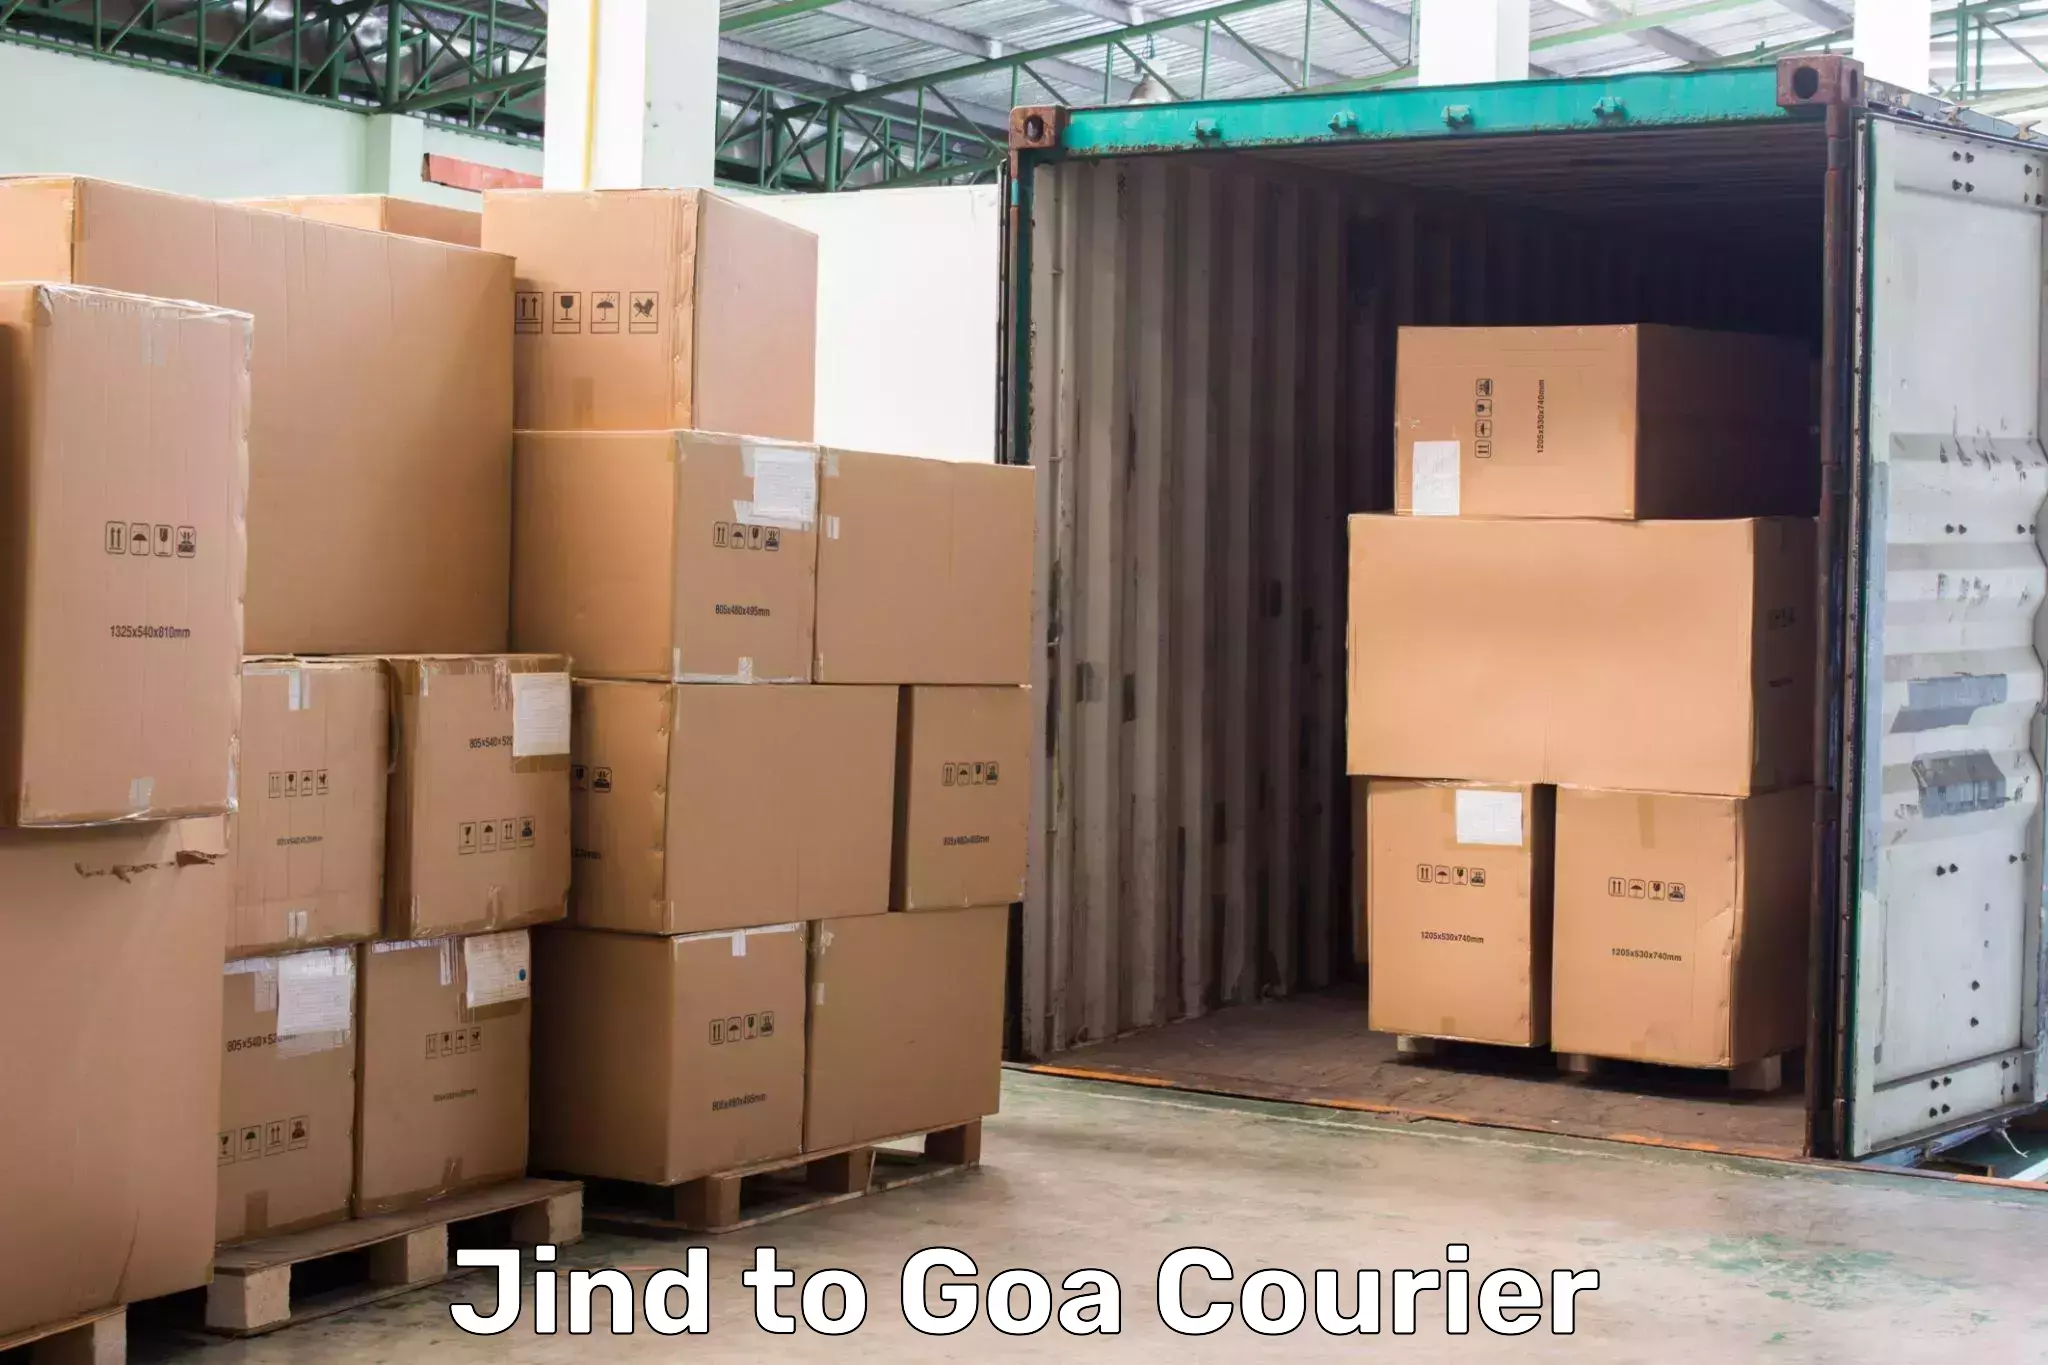 Courier service comparison Jind to Ponda